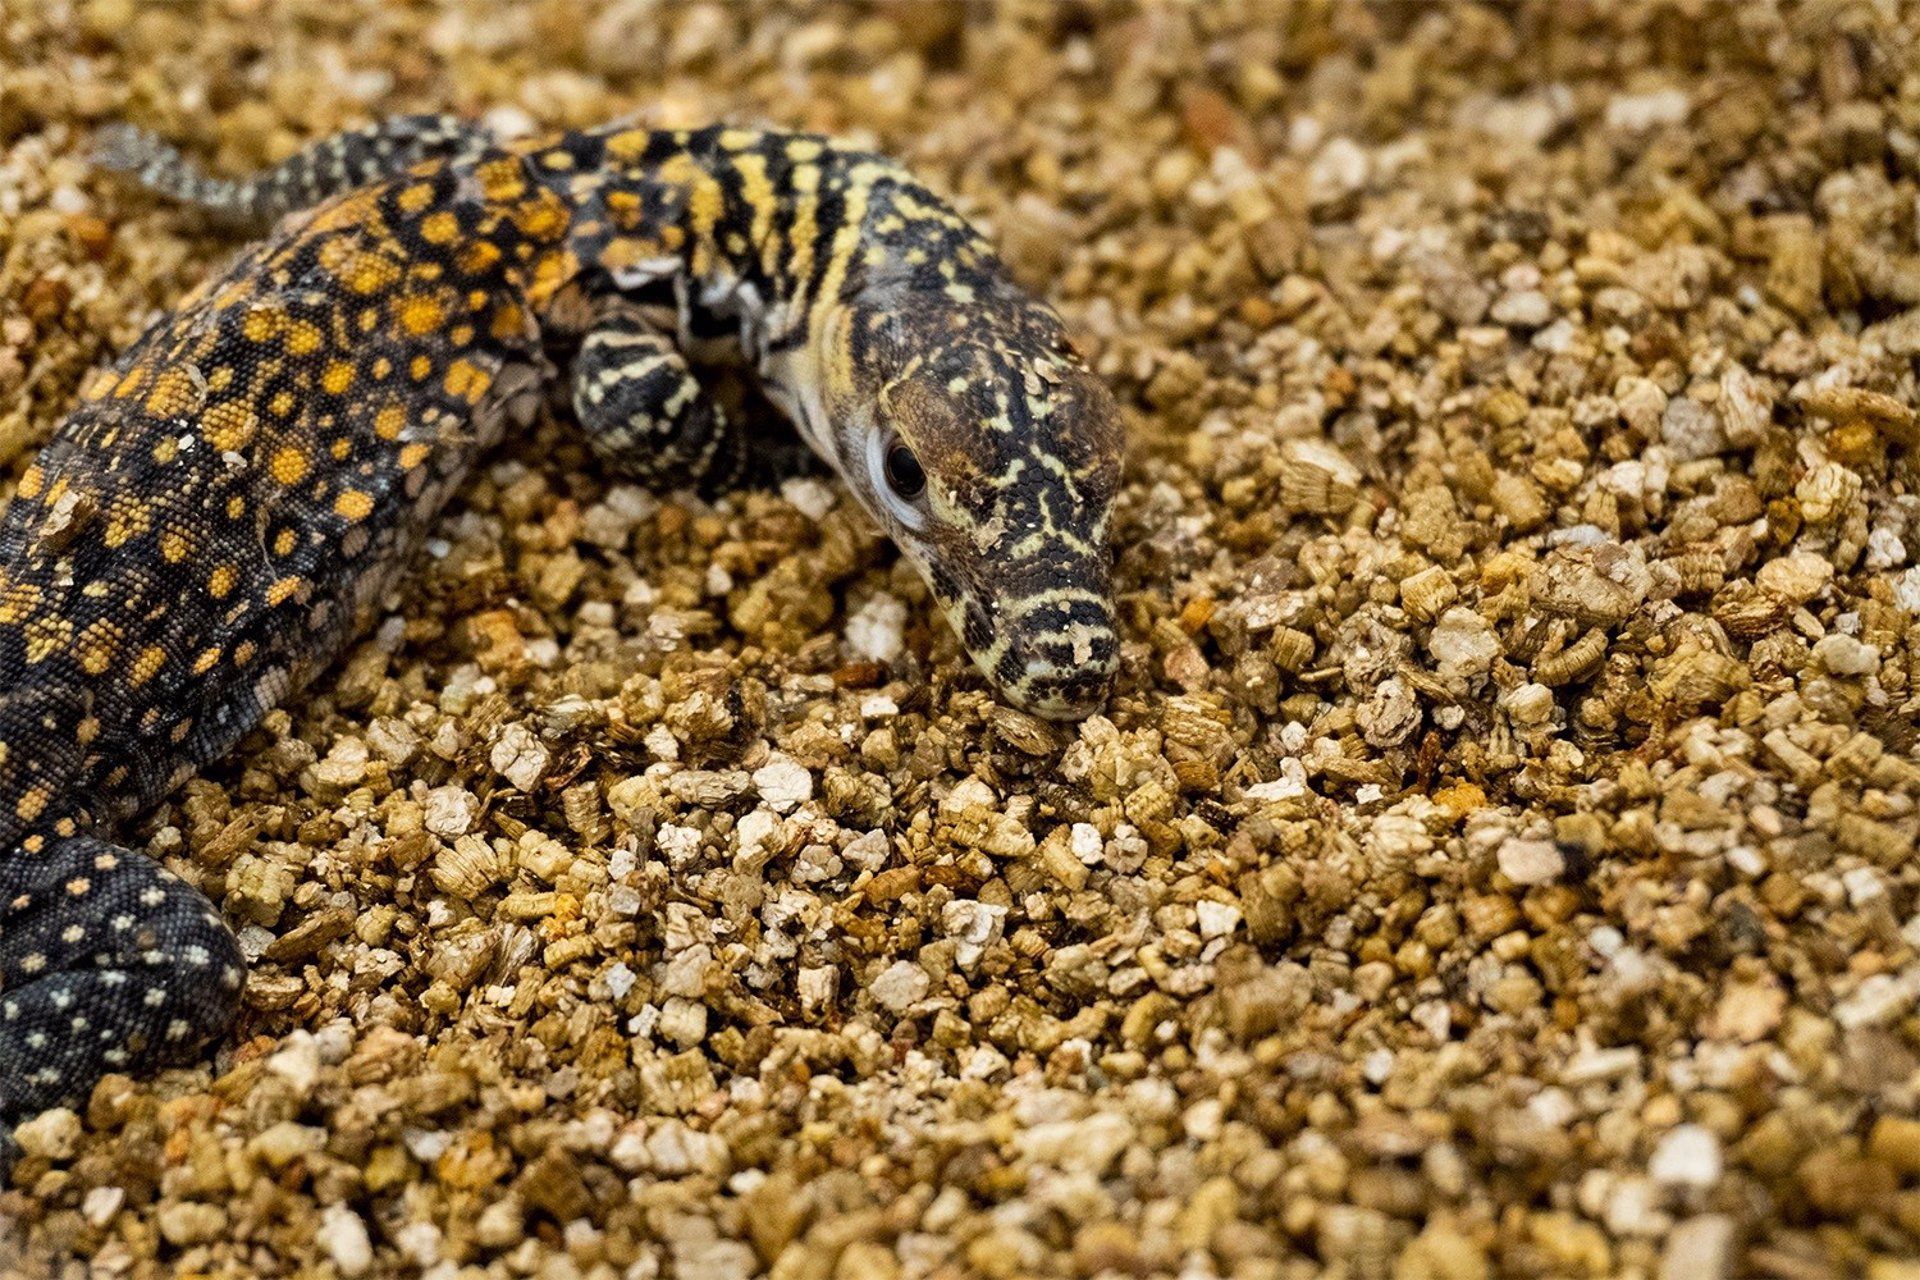 Nacen en Málaga cinco crías de dragón de Komodo: lengua bífida y saliva venenosa.